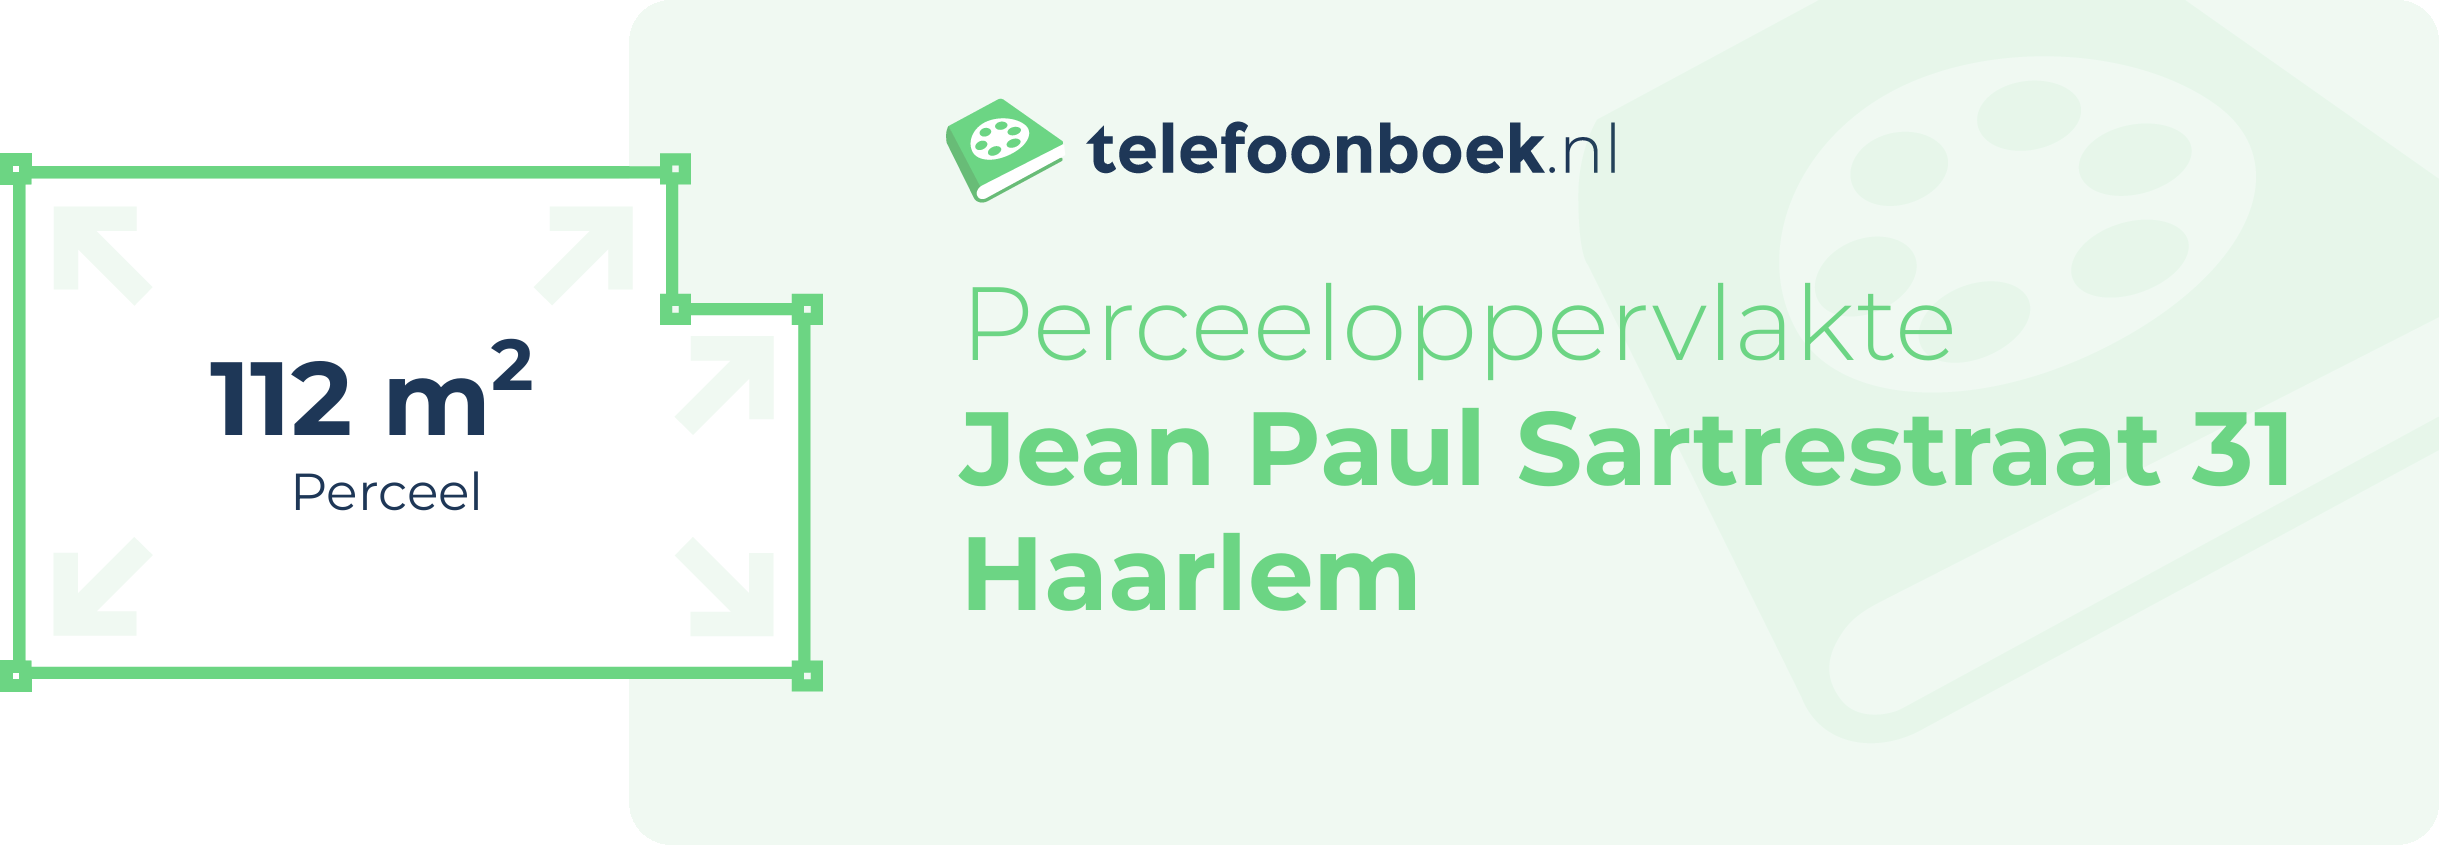 Perceeloppervlakte Jean Paul Sartrestraat 31 Haarlem